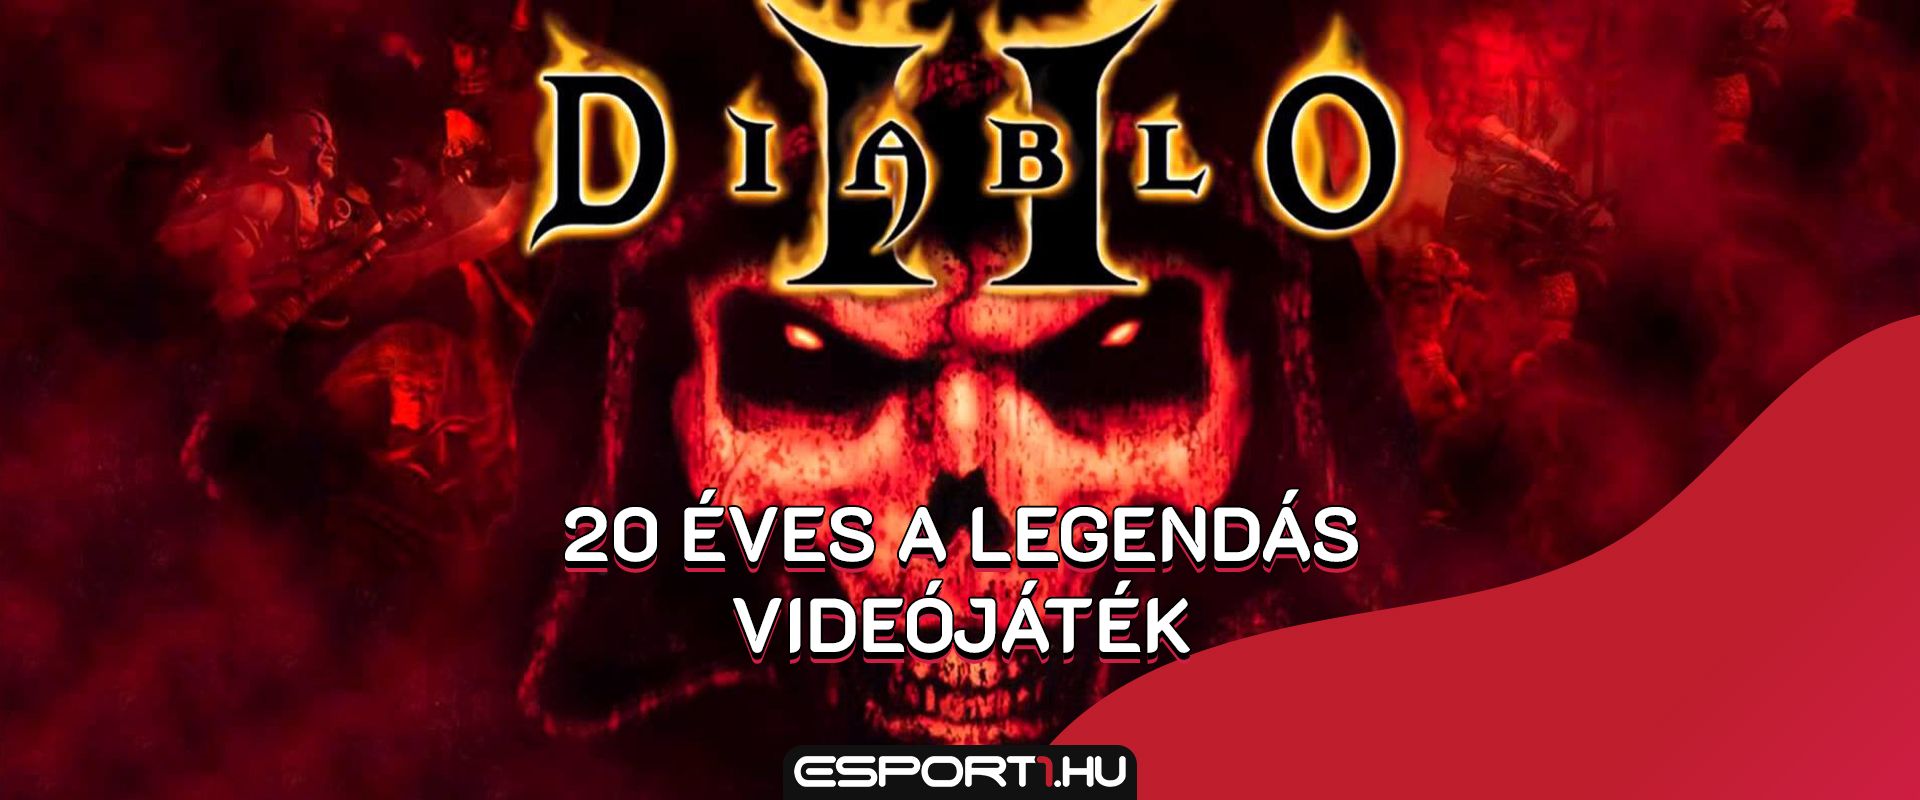 20 éves minden idők egyik legnépszerűbb RPG-je, a Diablo II